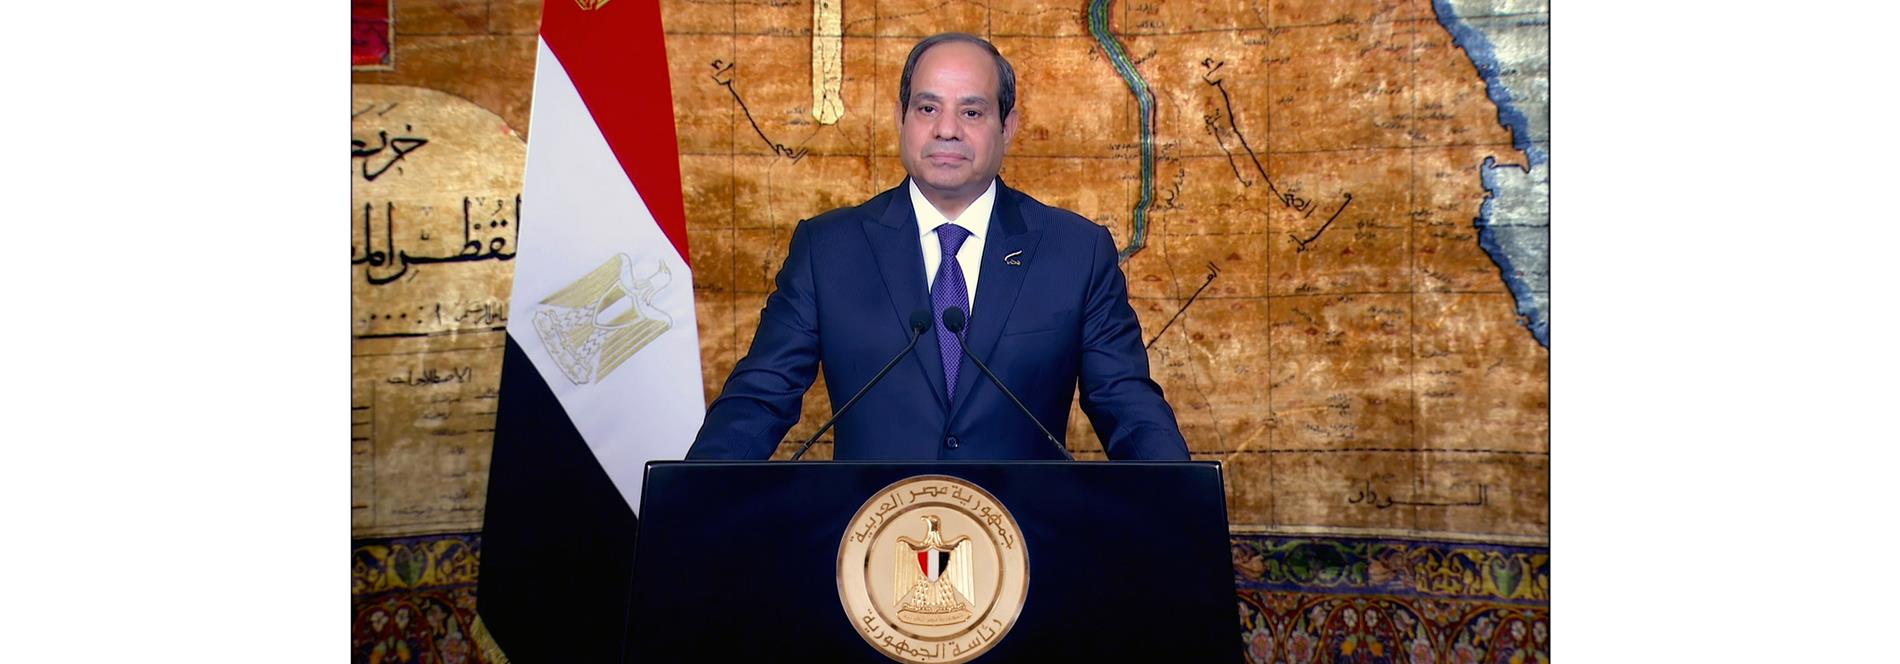 كلمة الرئيس عبد الفتاح السيسي بمناسبة الاحتفال بالذكرى الـ 42 لتحرير سيناء